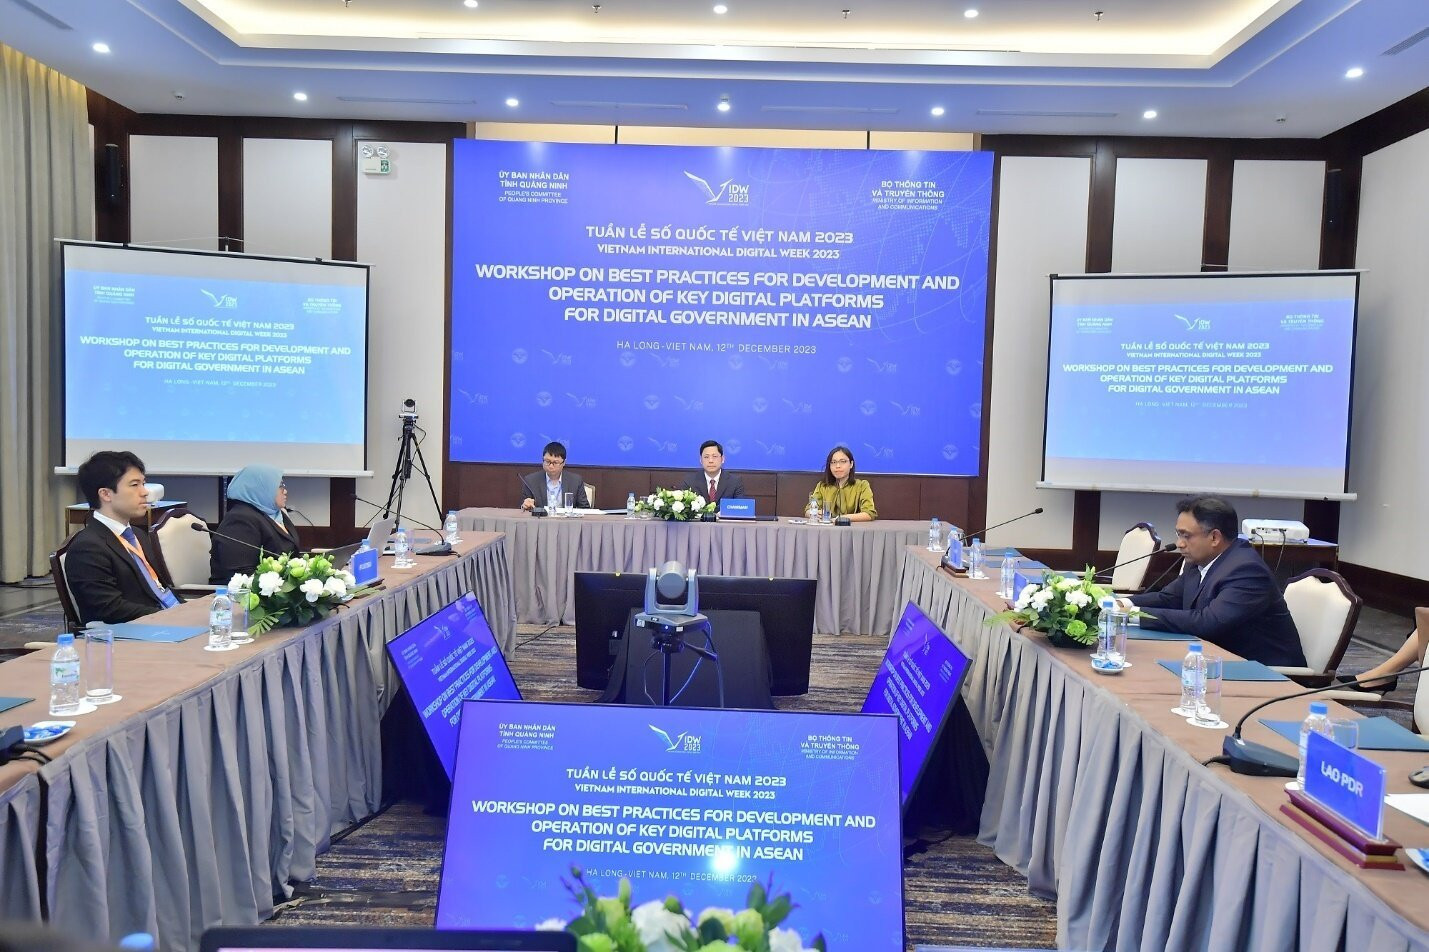 Toàn cảnh Hội thảo “Triển khai các thực tiễn xuất sắc nhất để phát triển và vận hành các nền tảng kỹ thuật số quan trọng cho Chính phủ số” diễn ra chiều 12/12 tại Quảng Ninh.